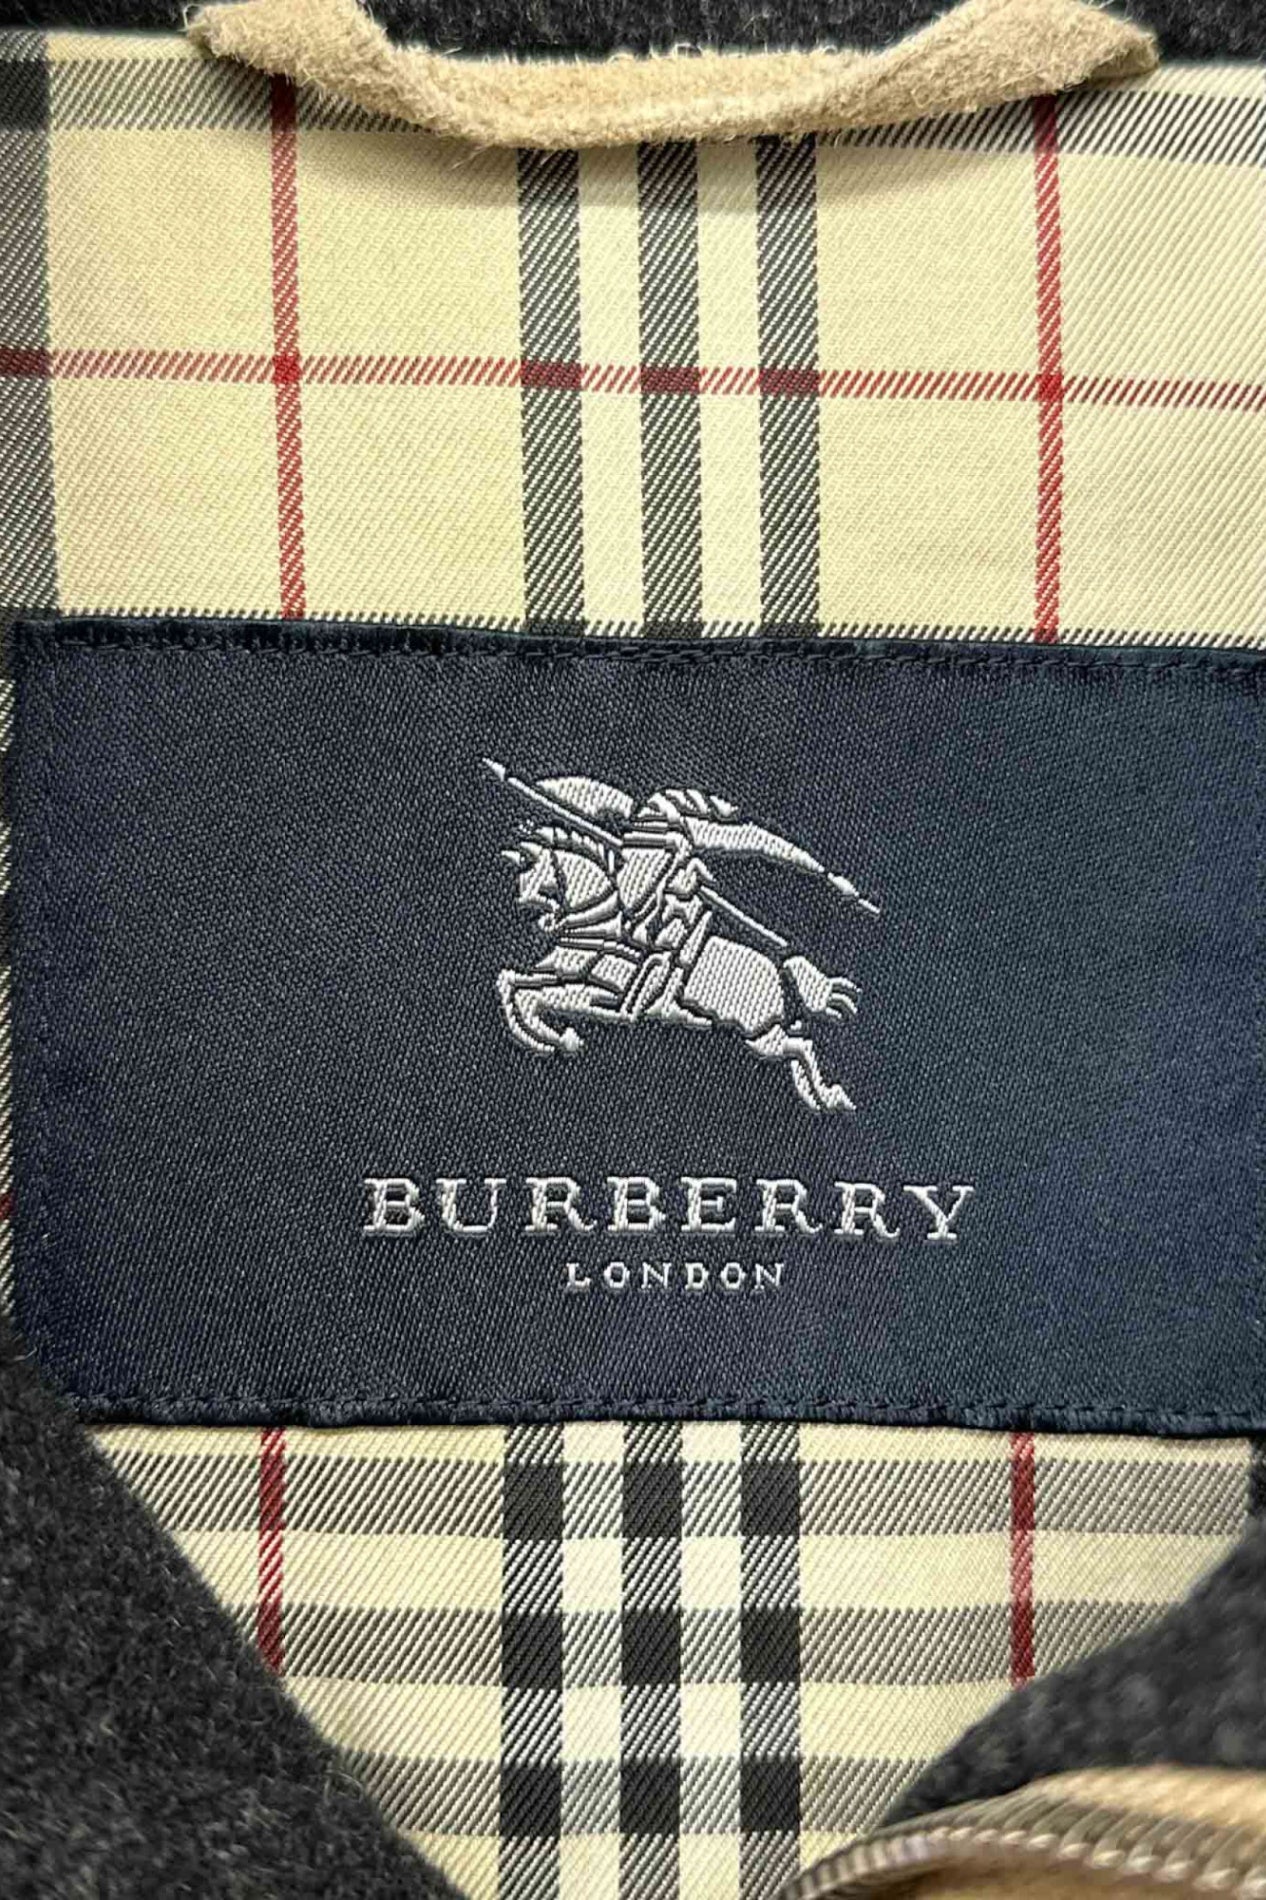 BURBERRY LONDON beige jacket